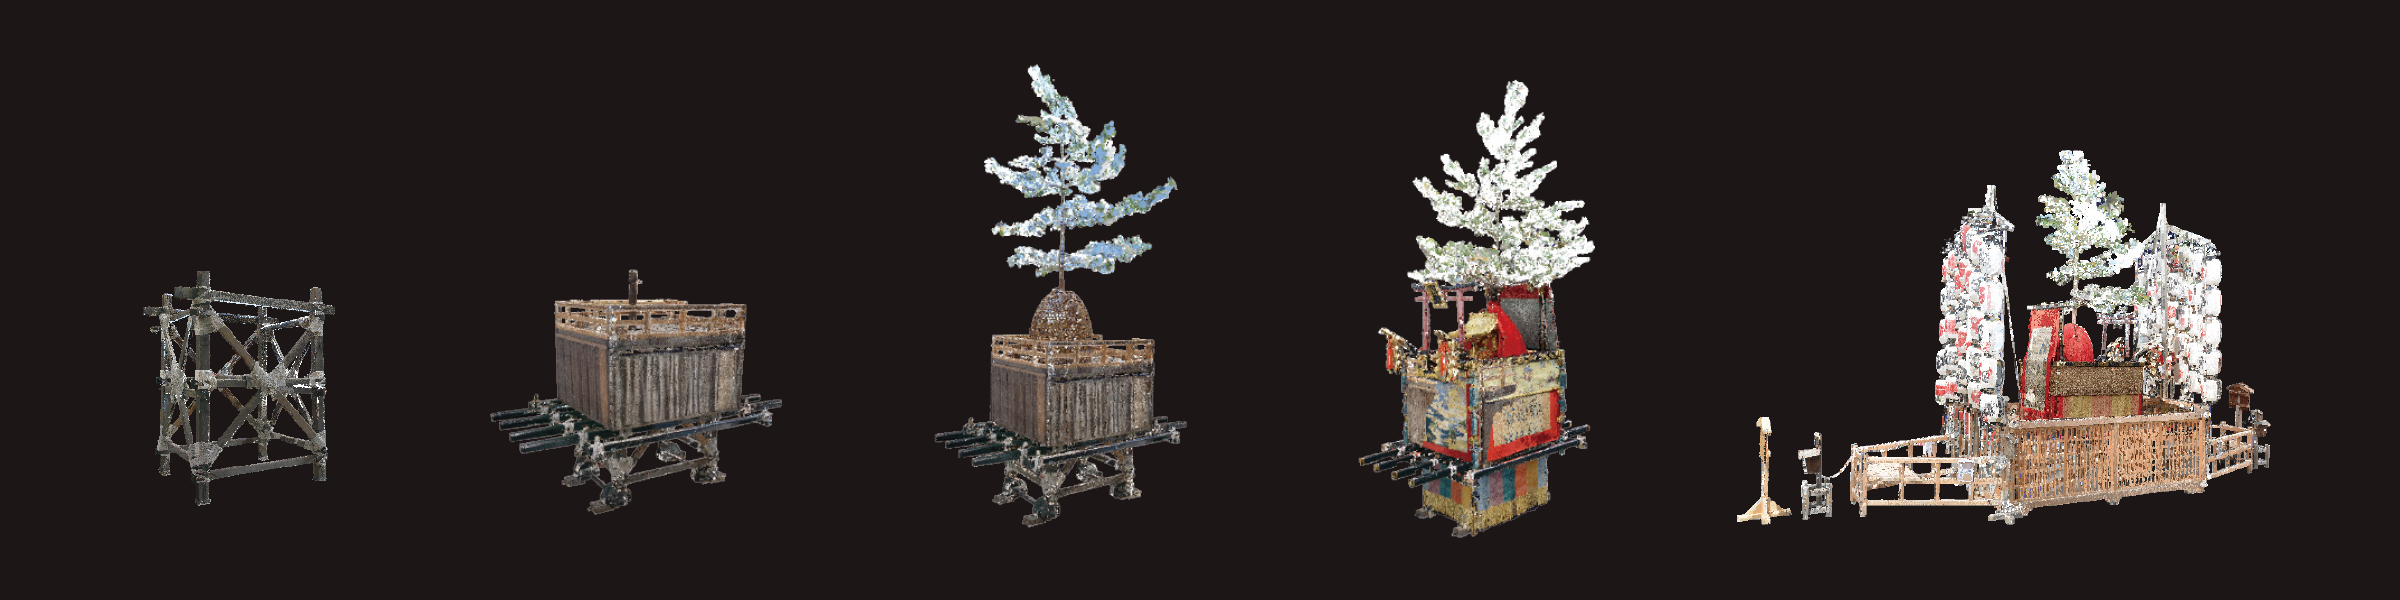 The Yama-date (assembly of a Yama decorative float) of Hachiman-yama